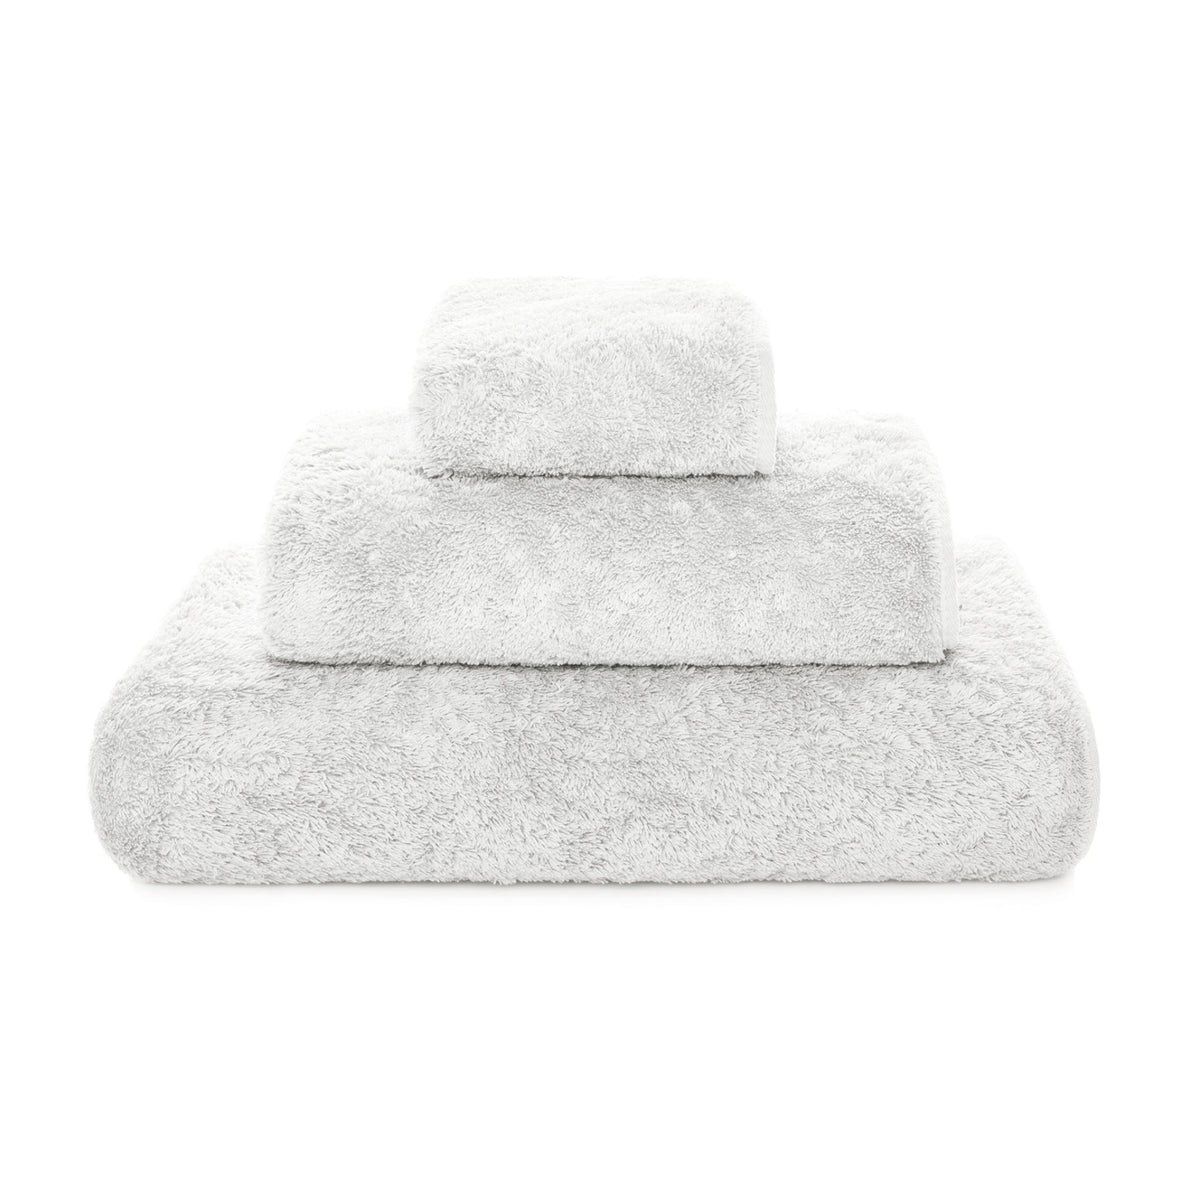 Clear Image of Graccioza Egoist Bath Towels Cloud